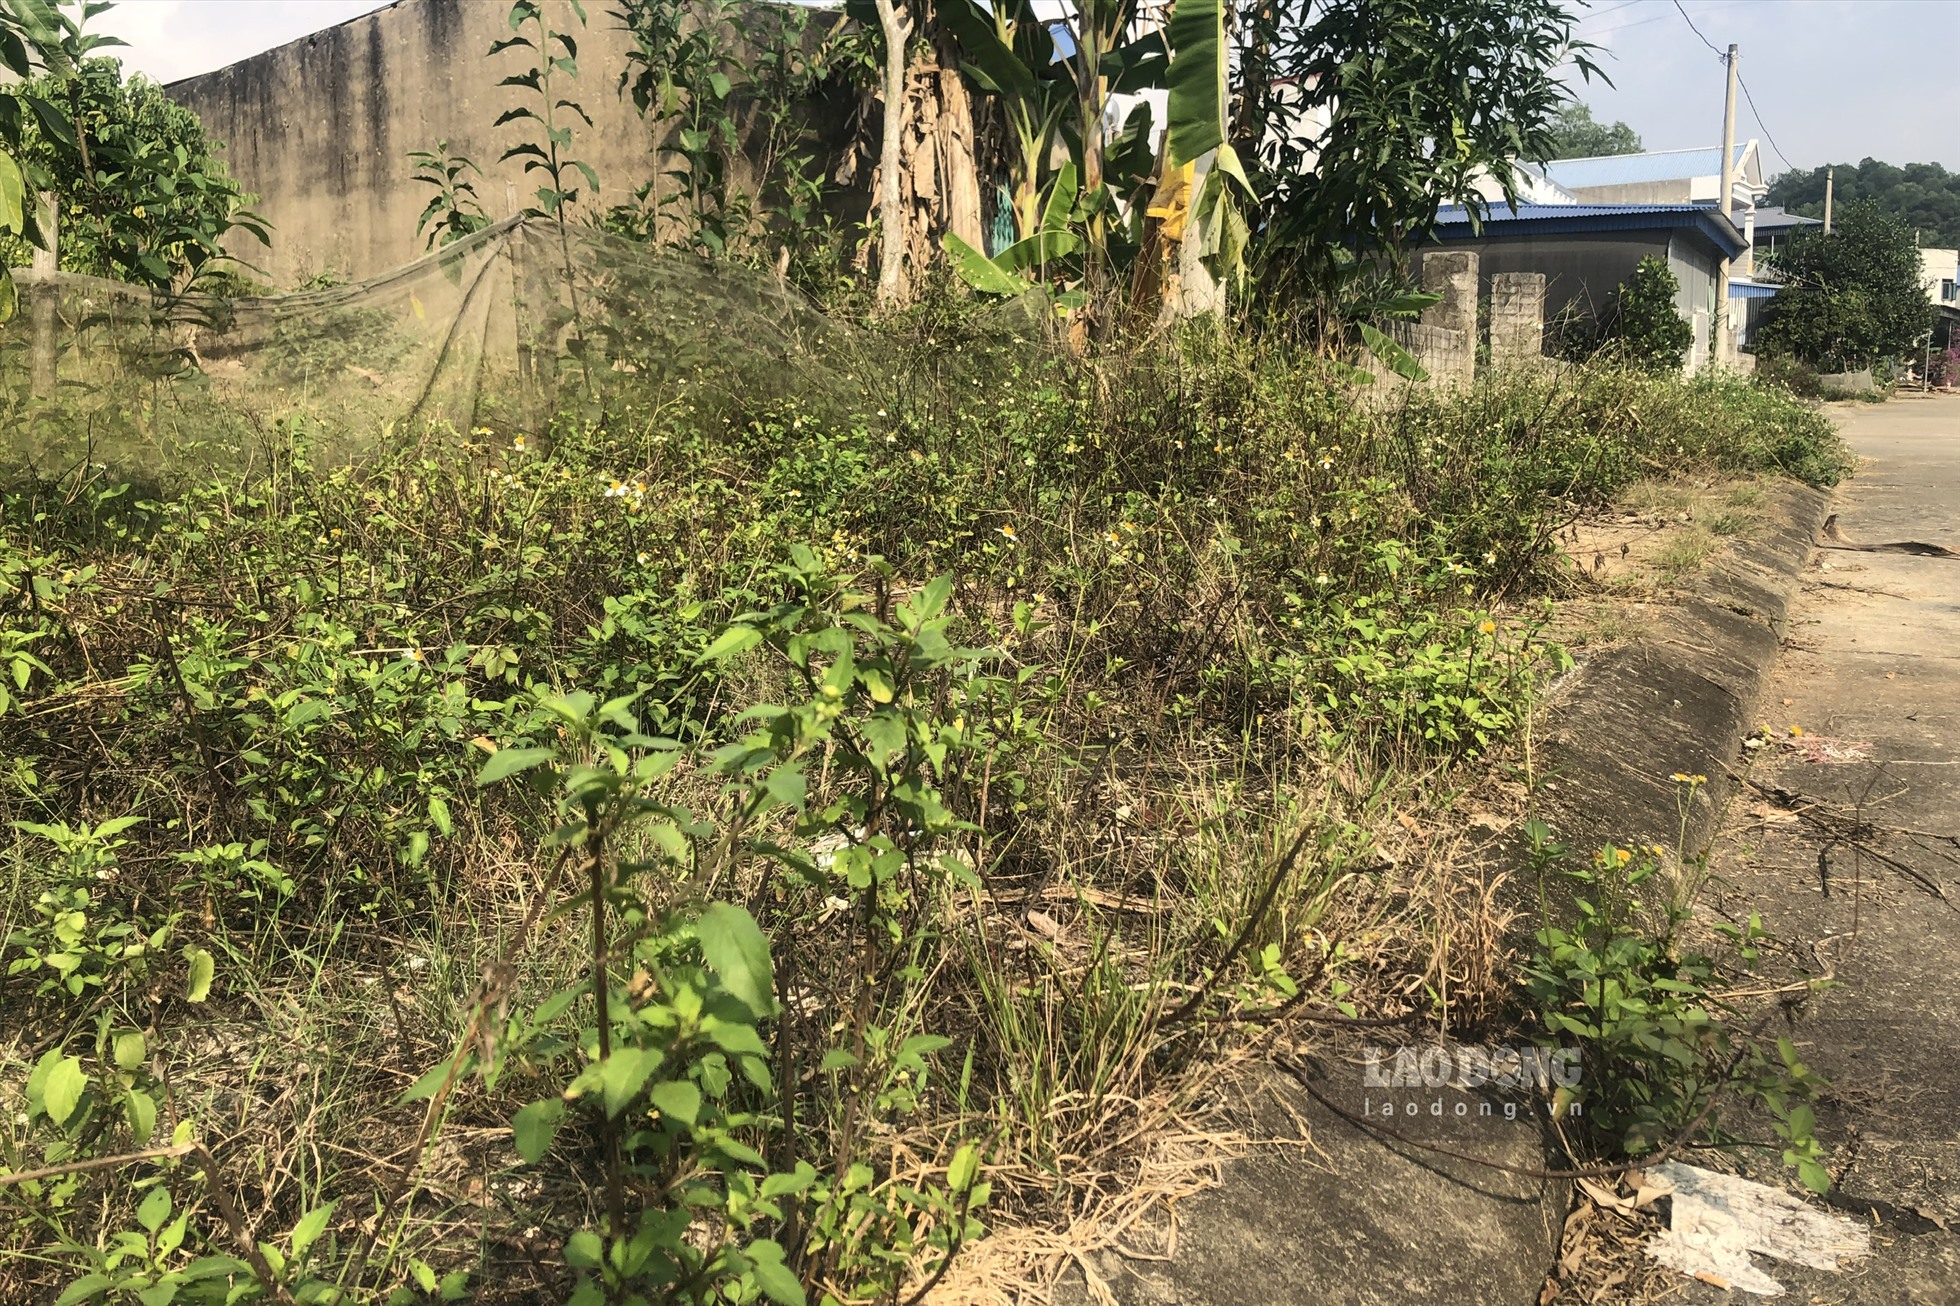 Vỉa hè dự án tái định cư cũng bị phủ kín bởi cỏ dại. Ảnh: Nguyễn Hoàn.